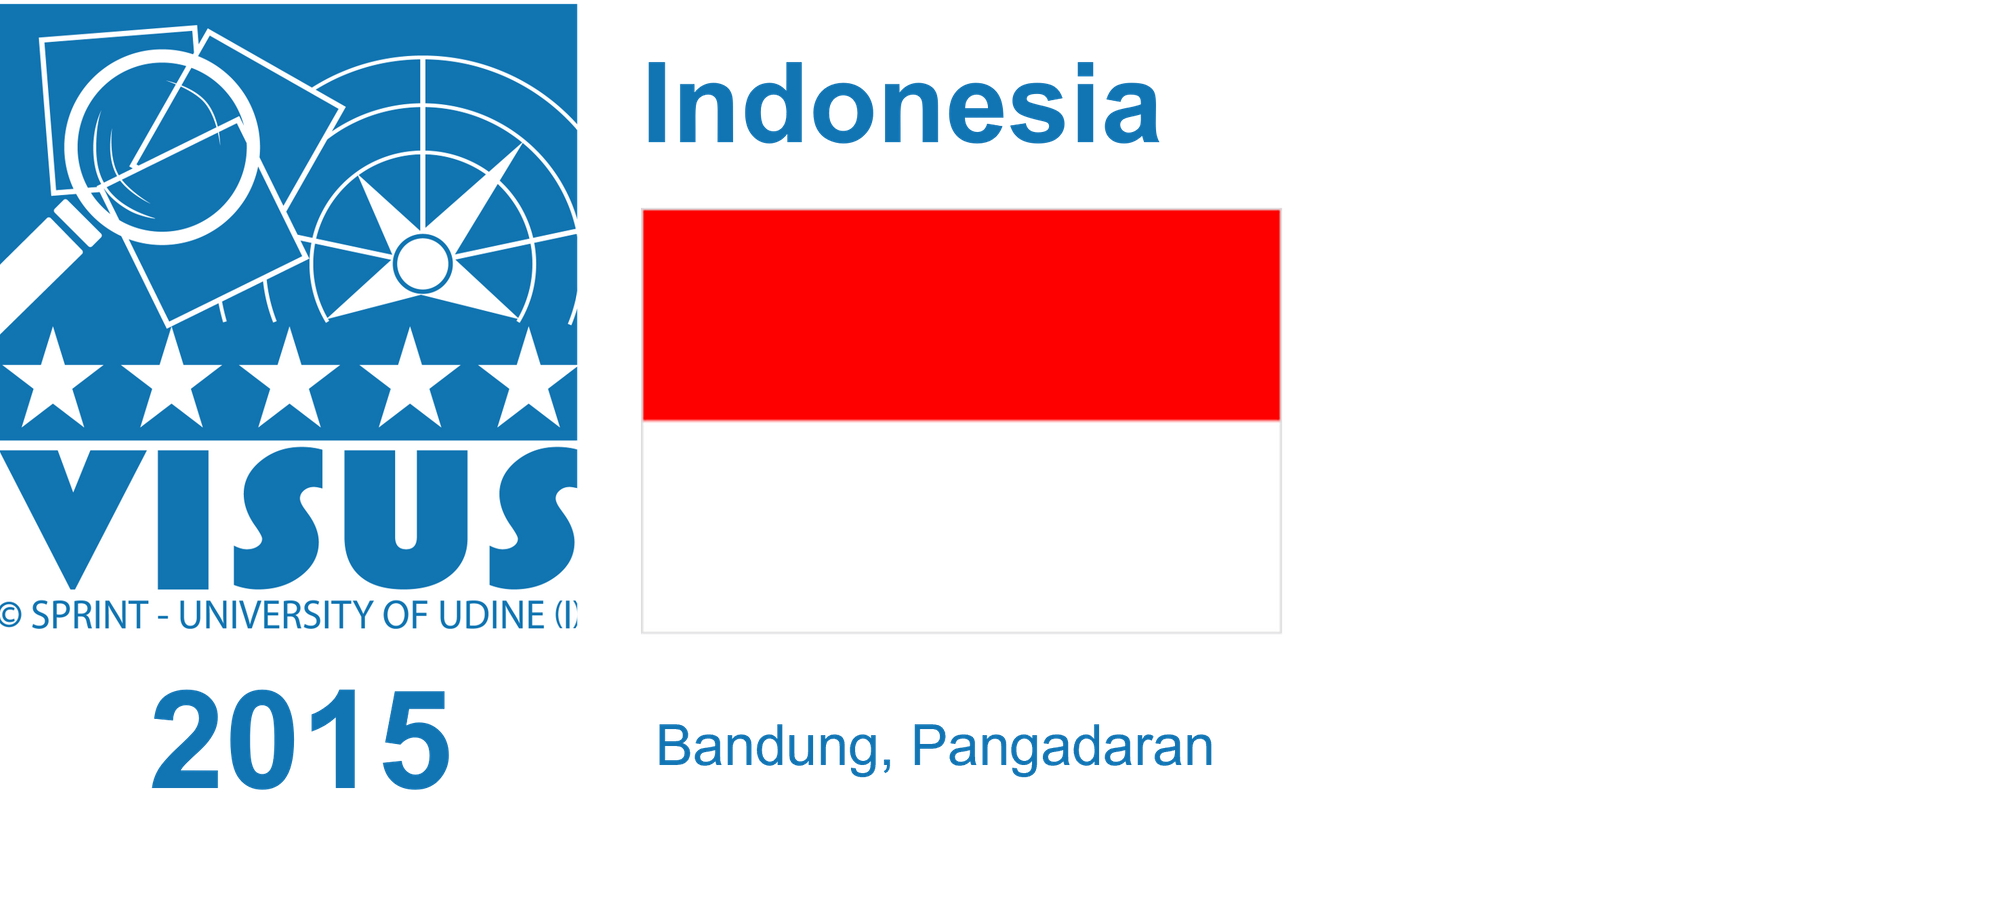 Indonesia, 2015